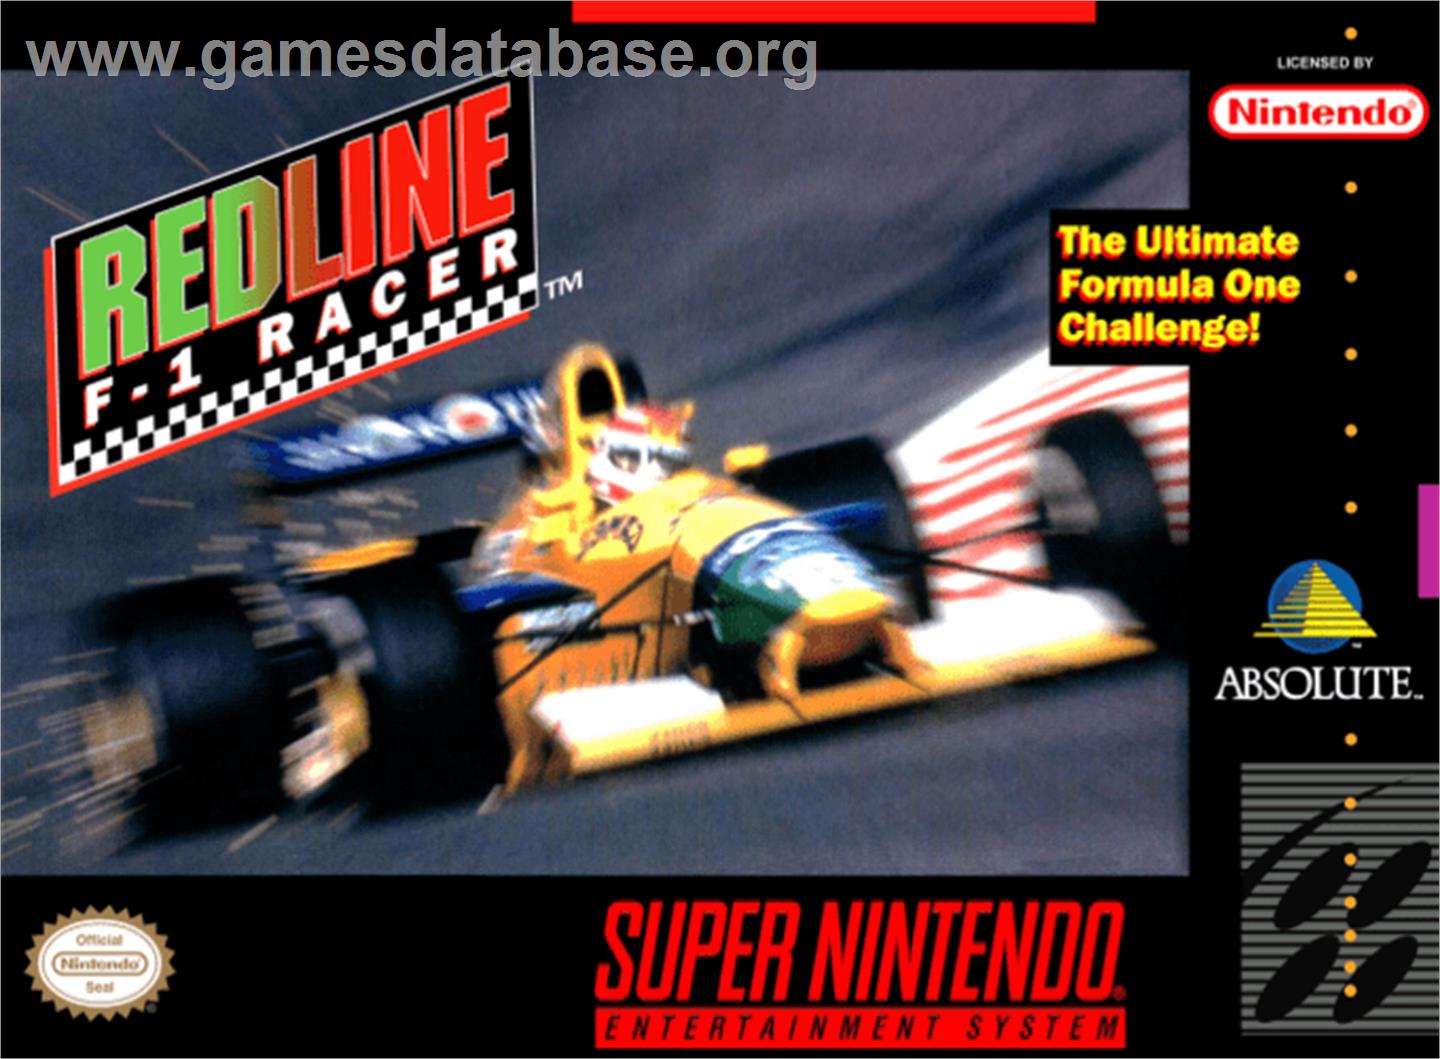 Redline: F1 Racer - Nintendo SNES - Artwork - Box